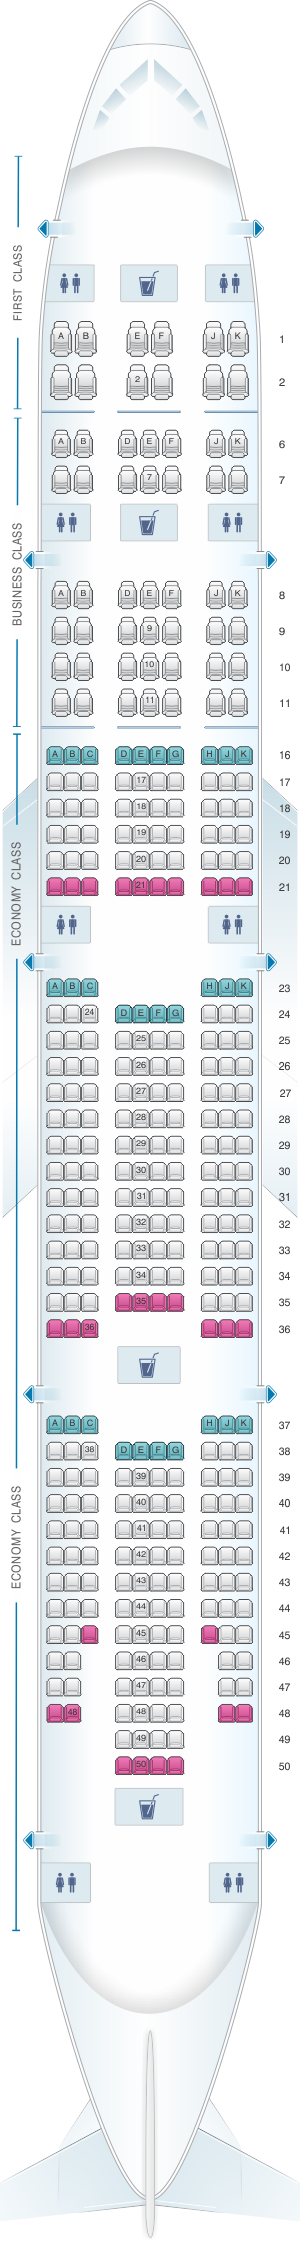 emirates seating plan